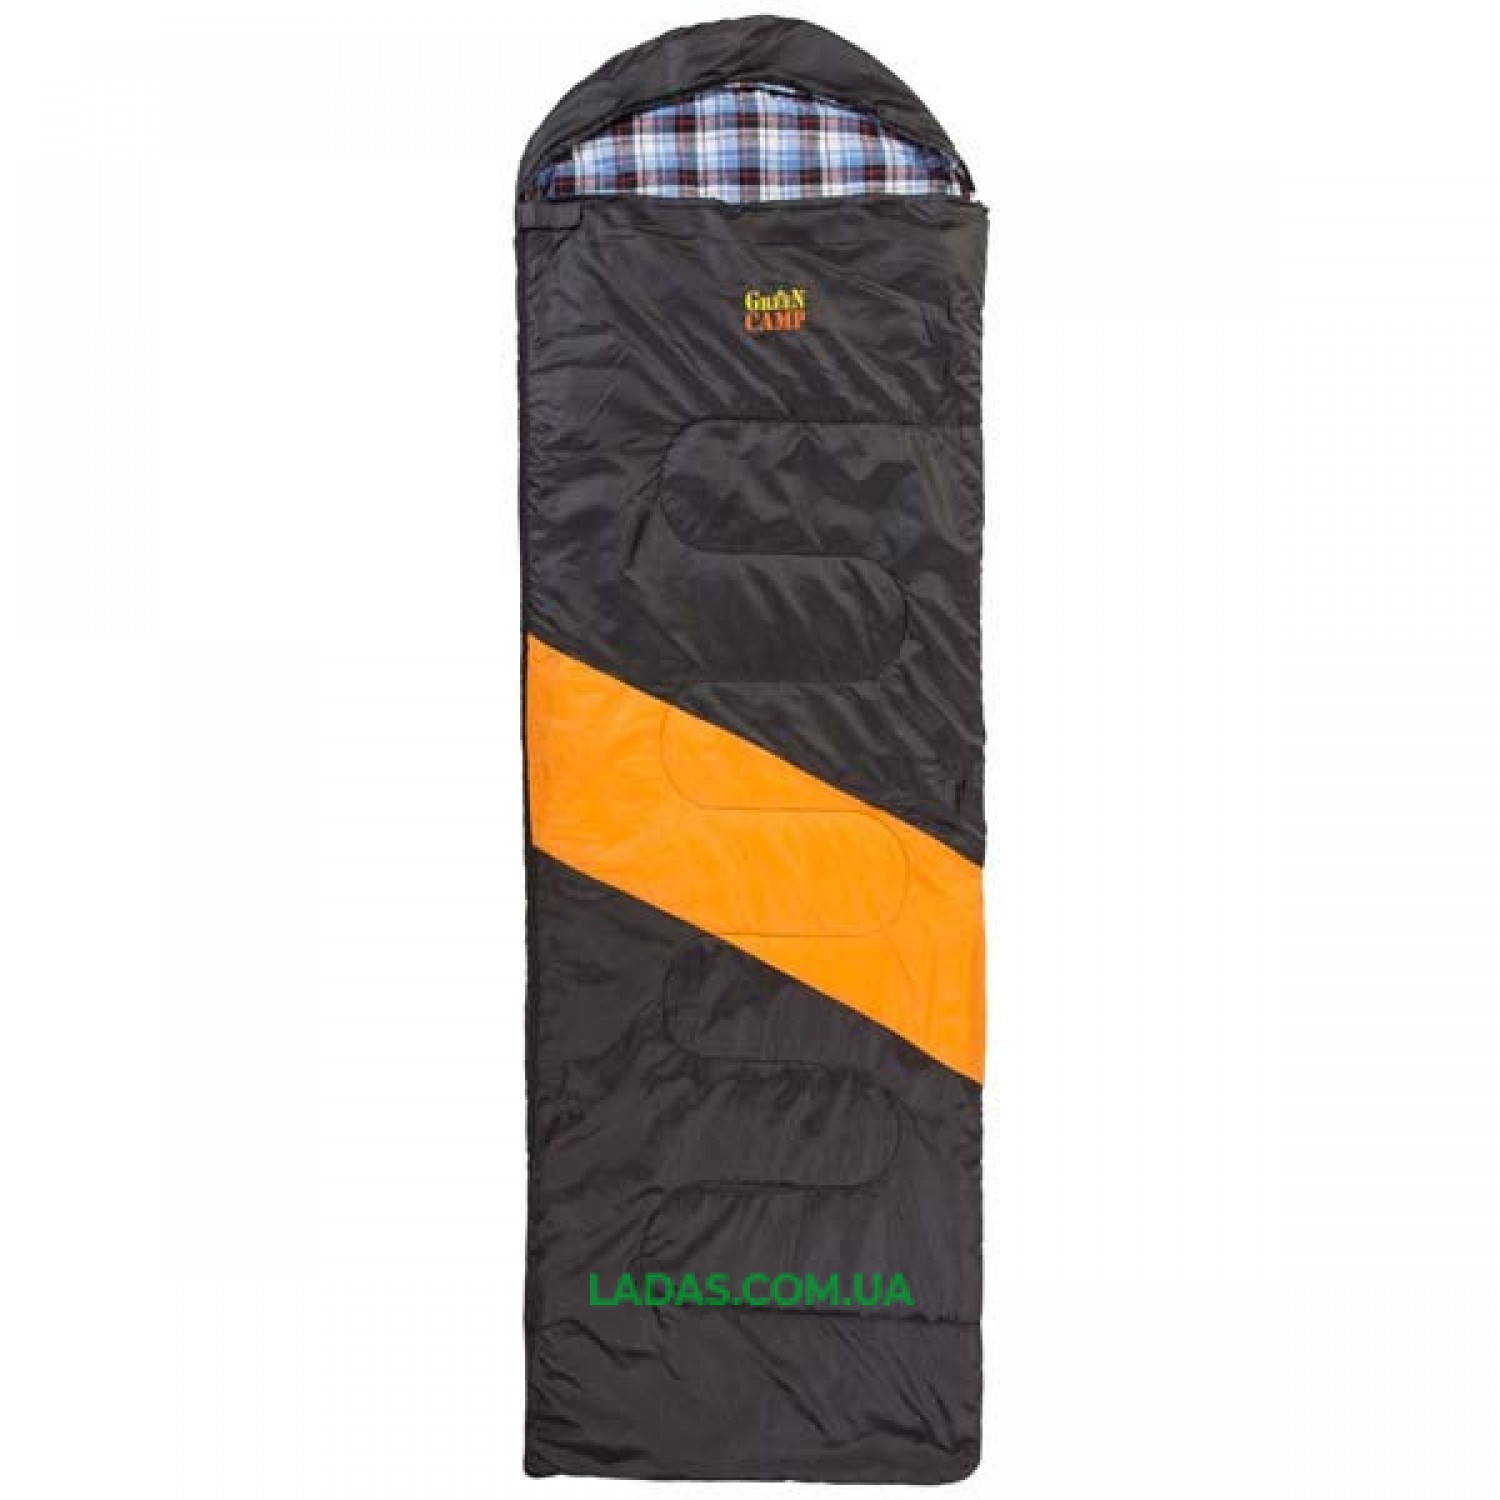 Спальник GreenCamp, одеяло, 450гр/м2, черно/оранжевый, подкладка Barberi, 230 х 75 см.